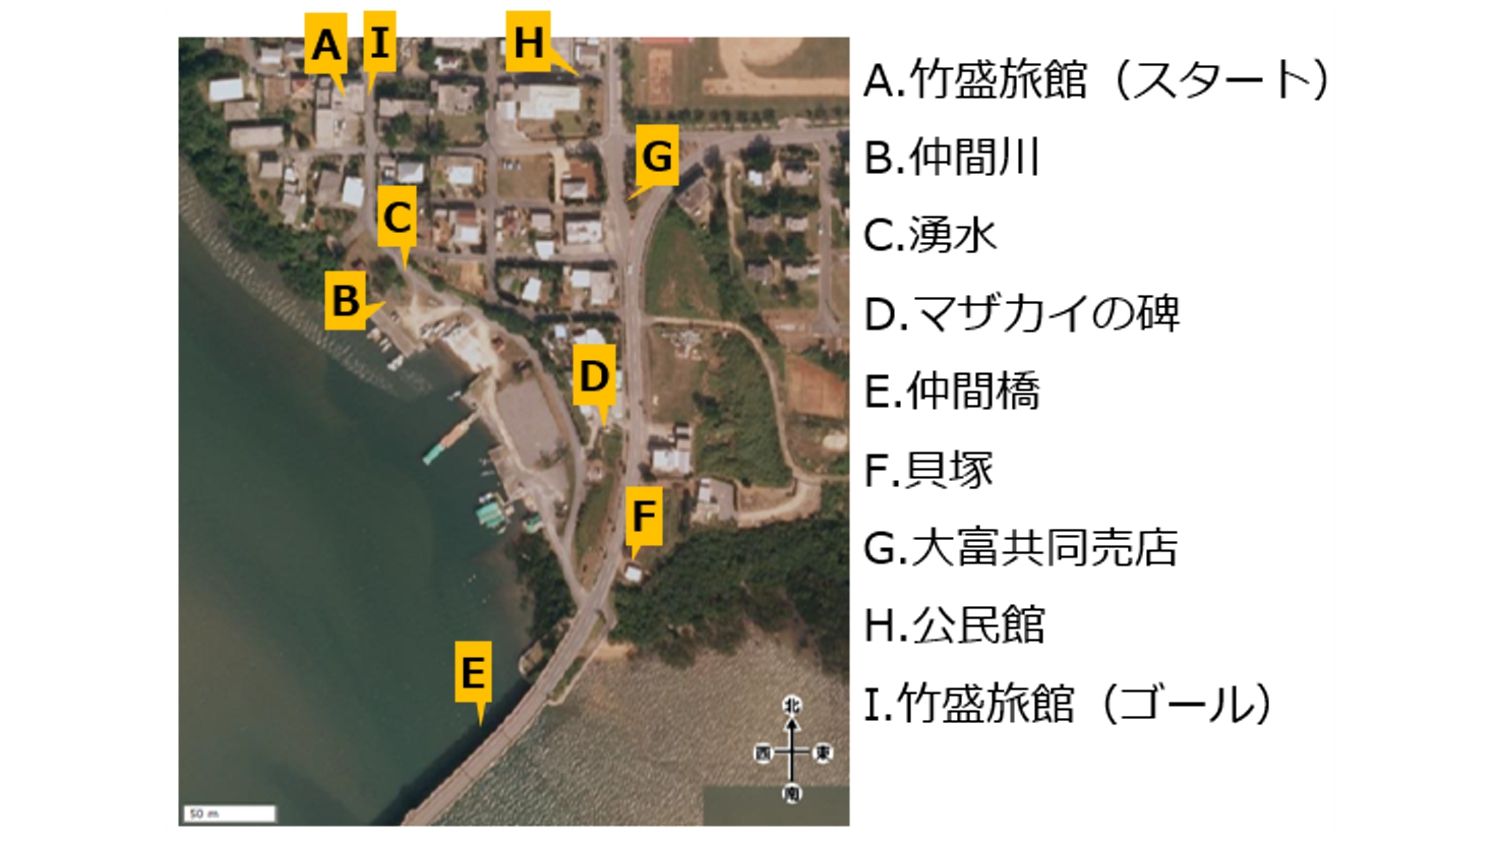 沖縄県 西表島 大富地区の街巡りツアーマップ